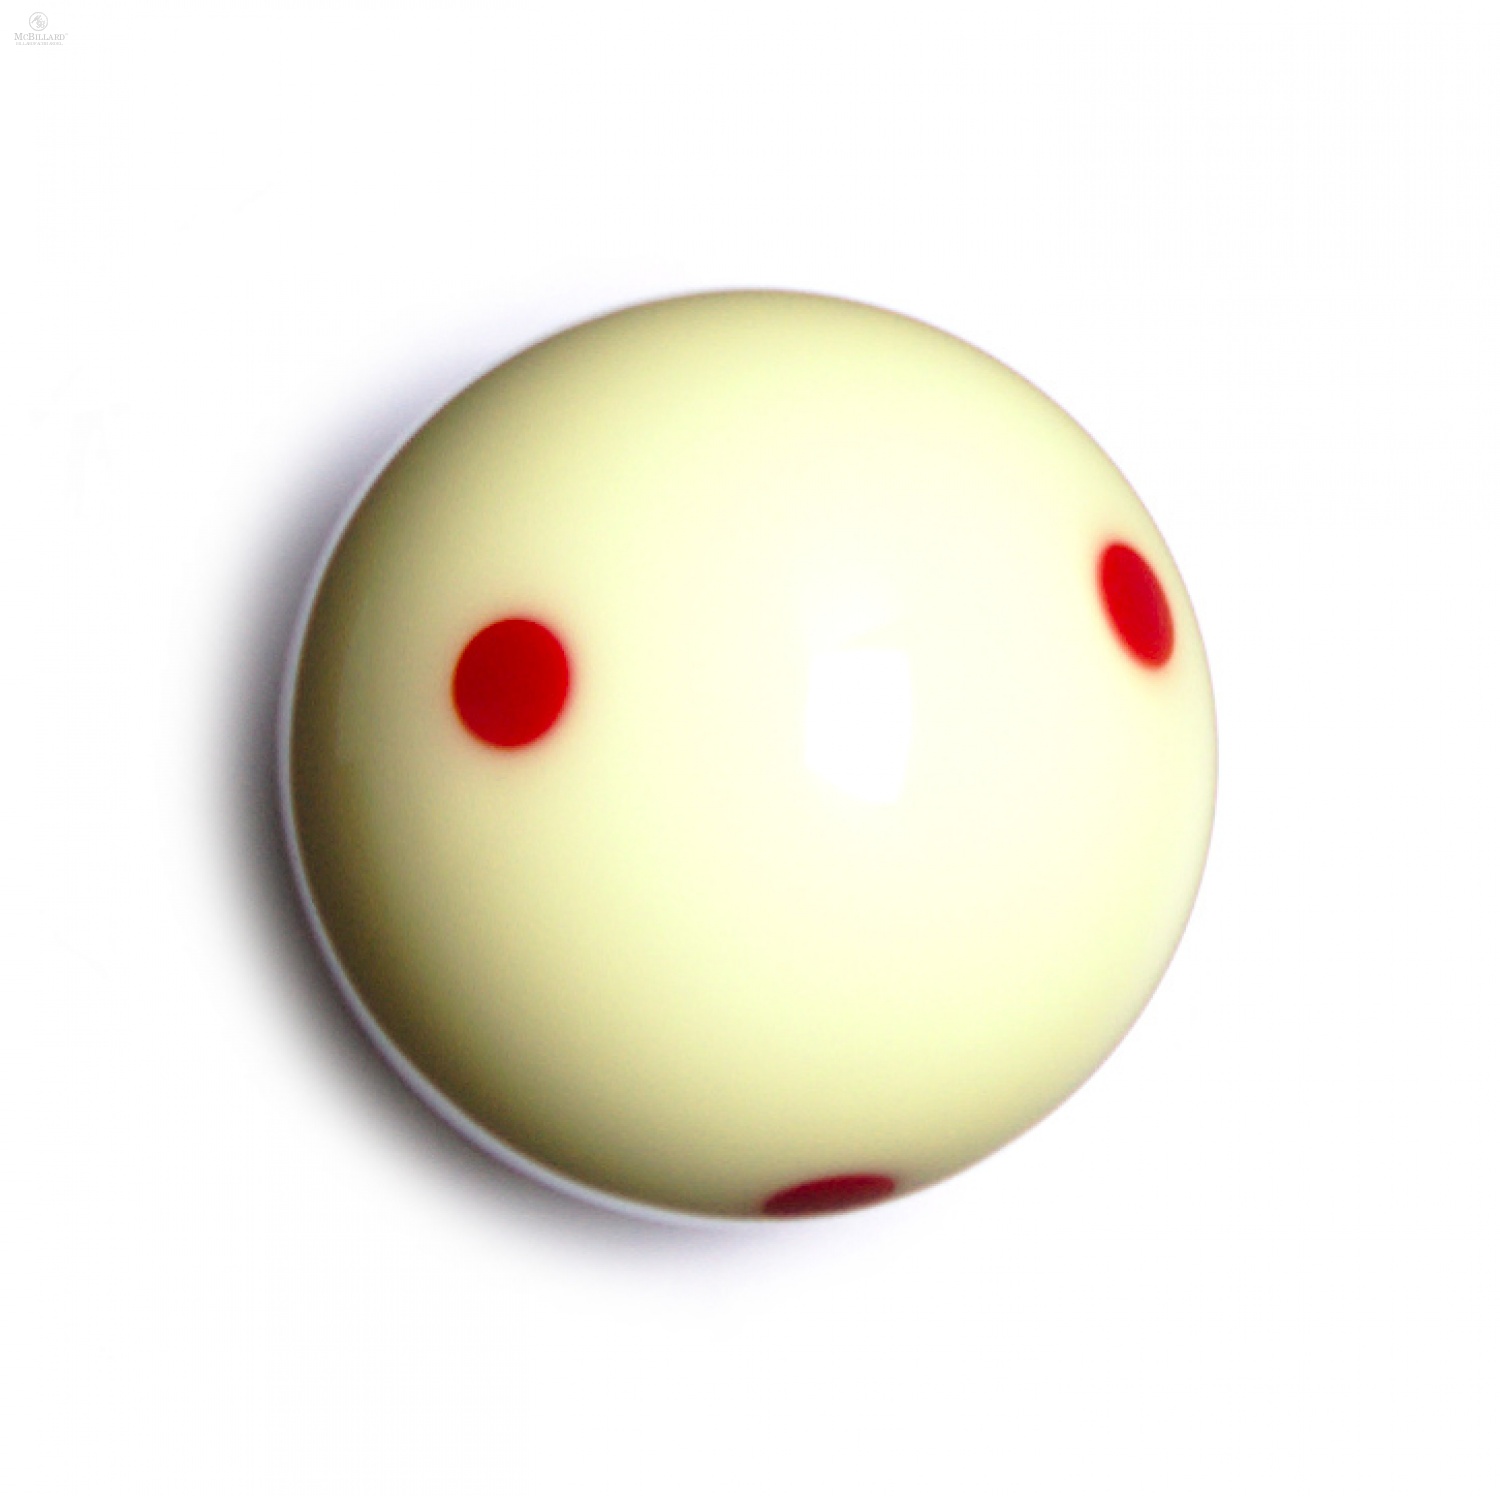 57,2 Mm Billardkugel Aramith Queue-Kugel Roter Punkt/Biue-Punkt Optional Tooart 1 Stücke Weiße Queue-Kugel 